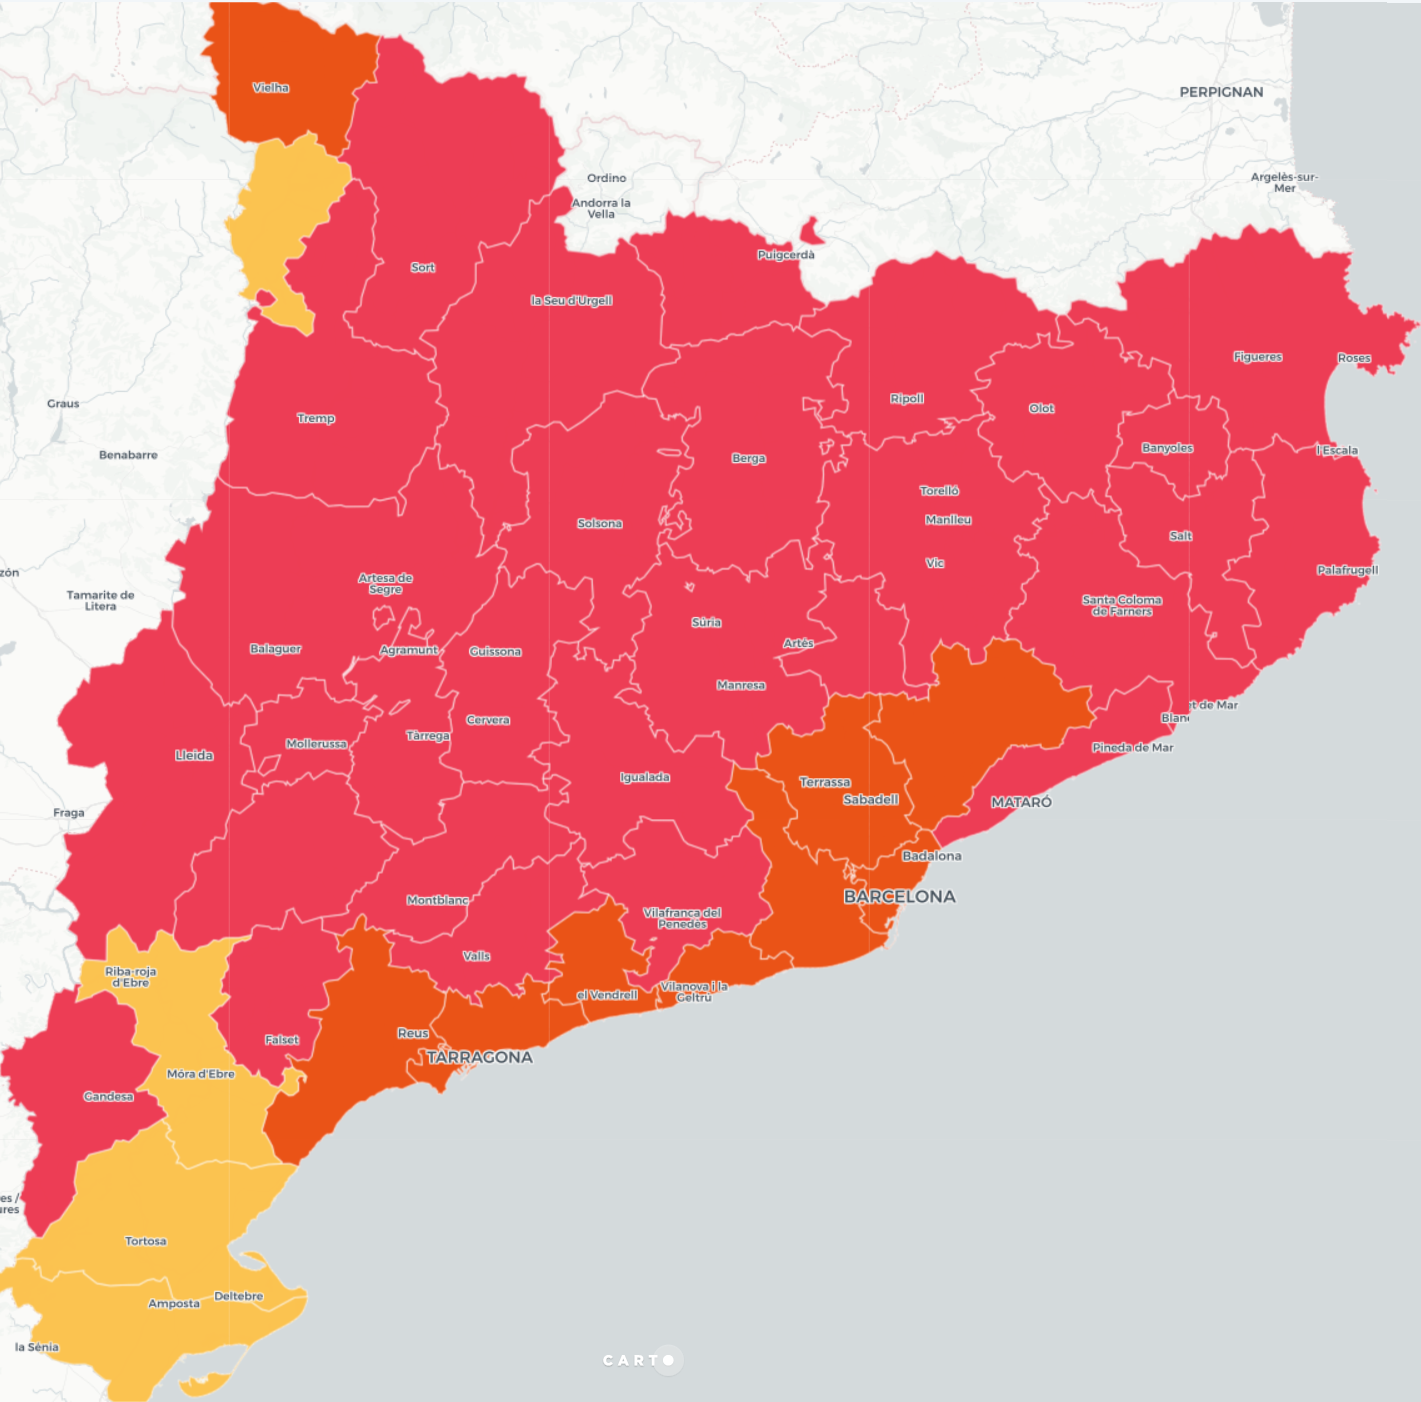 MAPA: El partido más votado por comarca